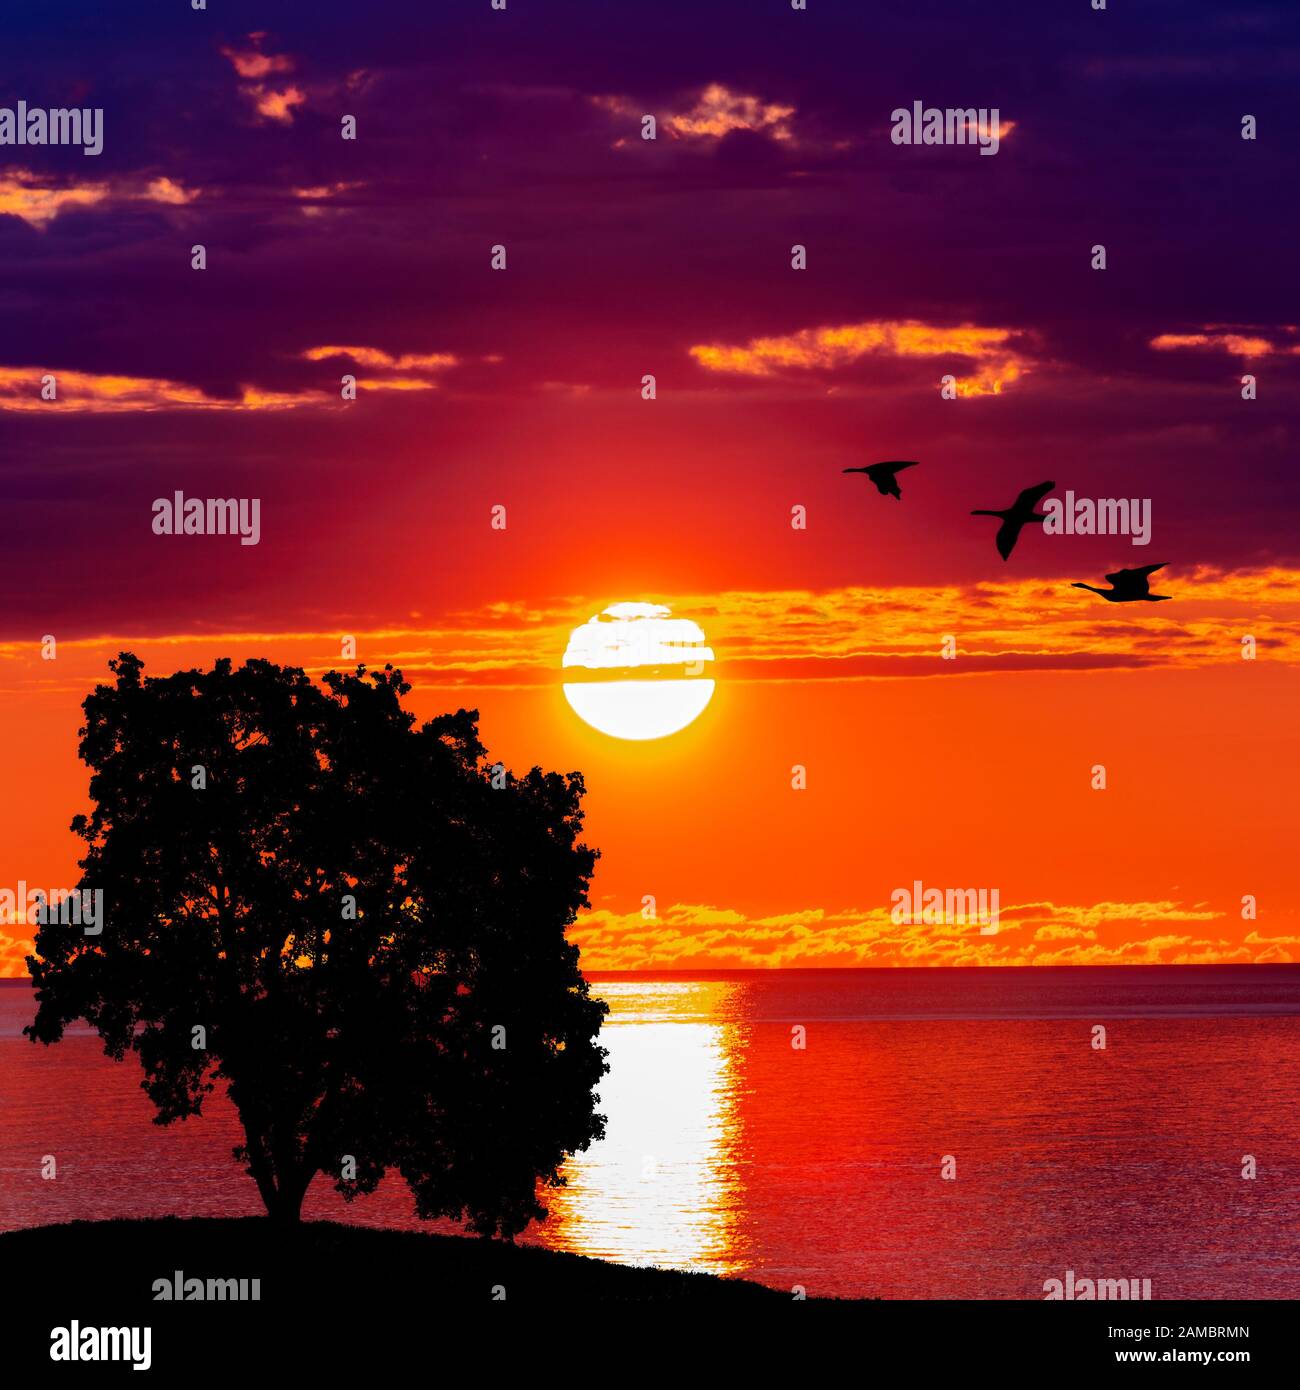 tree and birds on the sunset. beautiful sunrise. Nature background Stock Photo